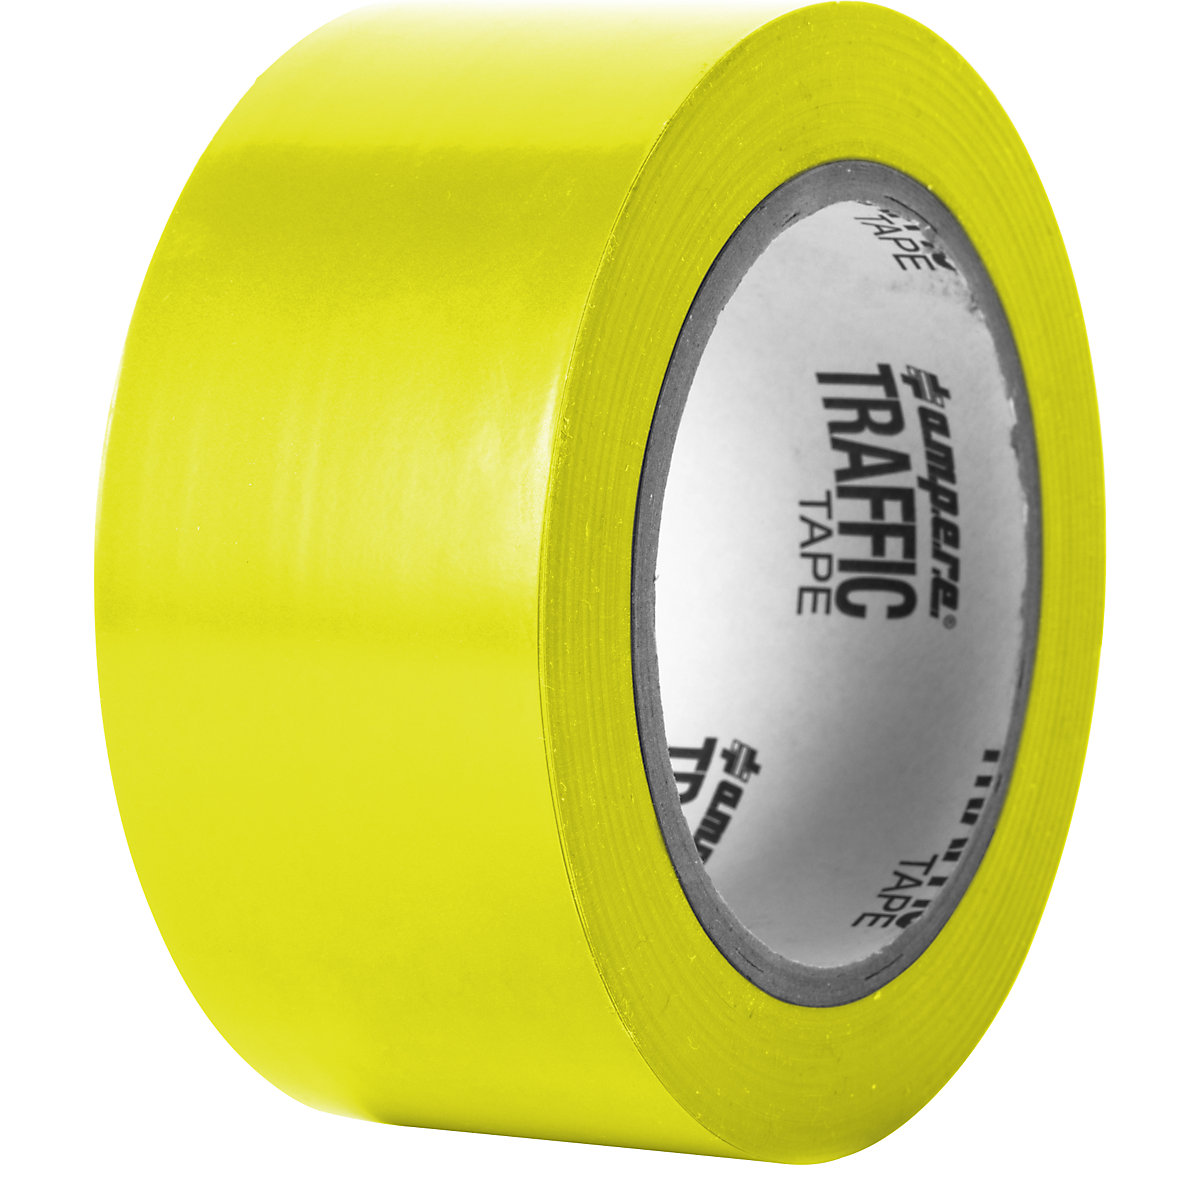 Bodenmarkierungsband Ampere, Breite 50 mm, gelb-6